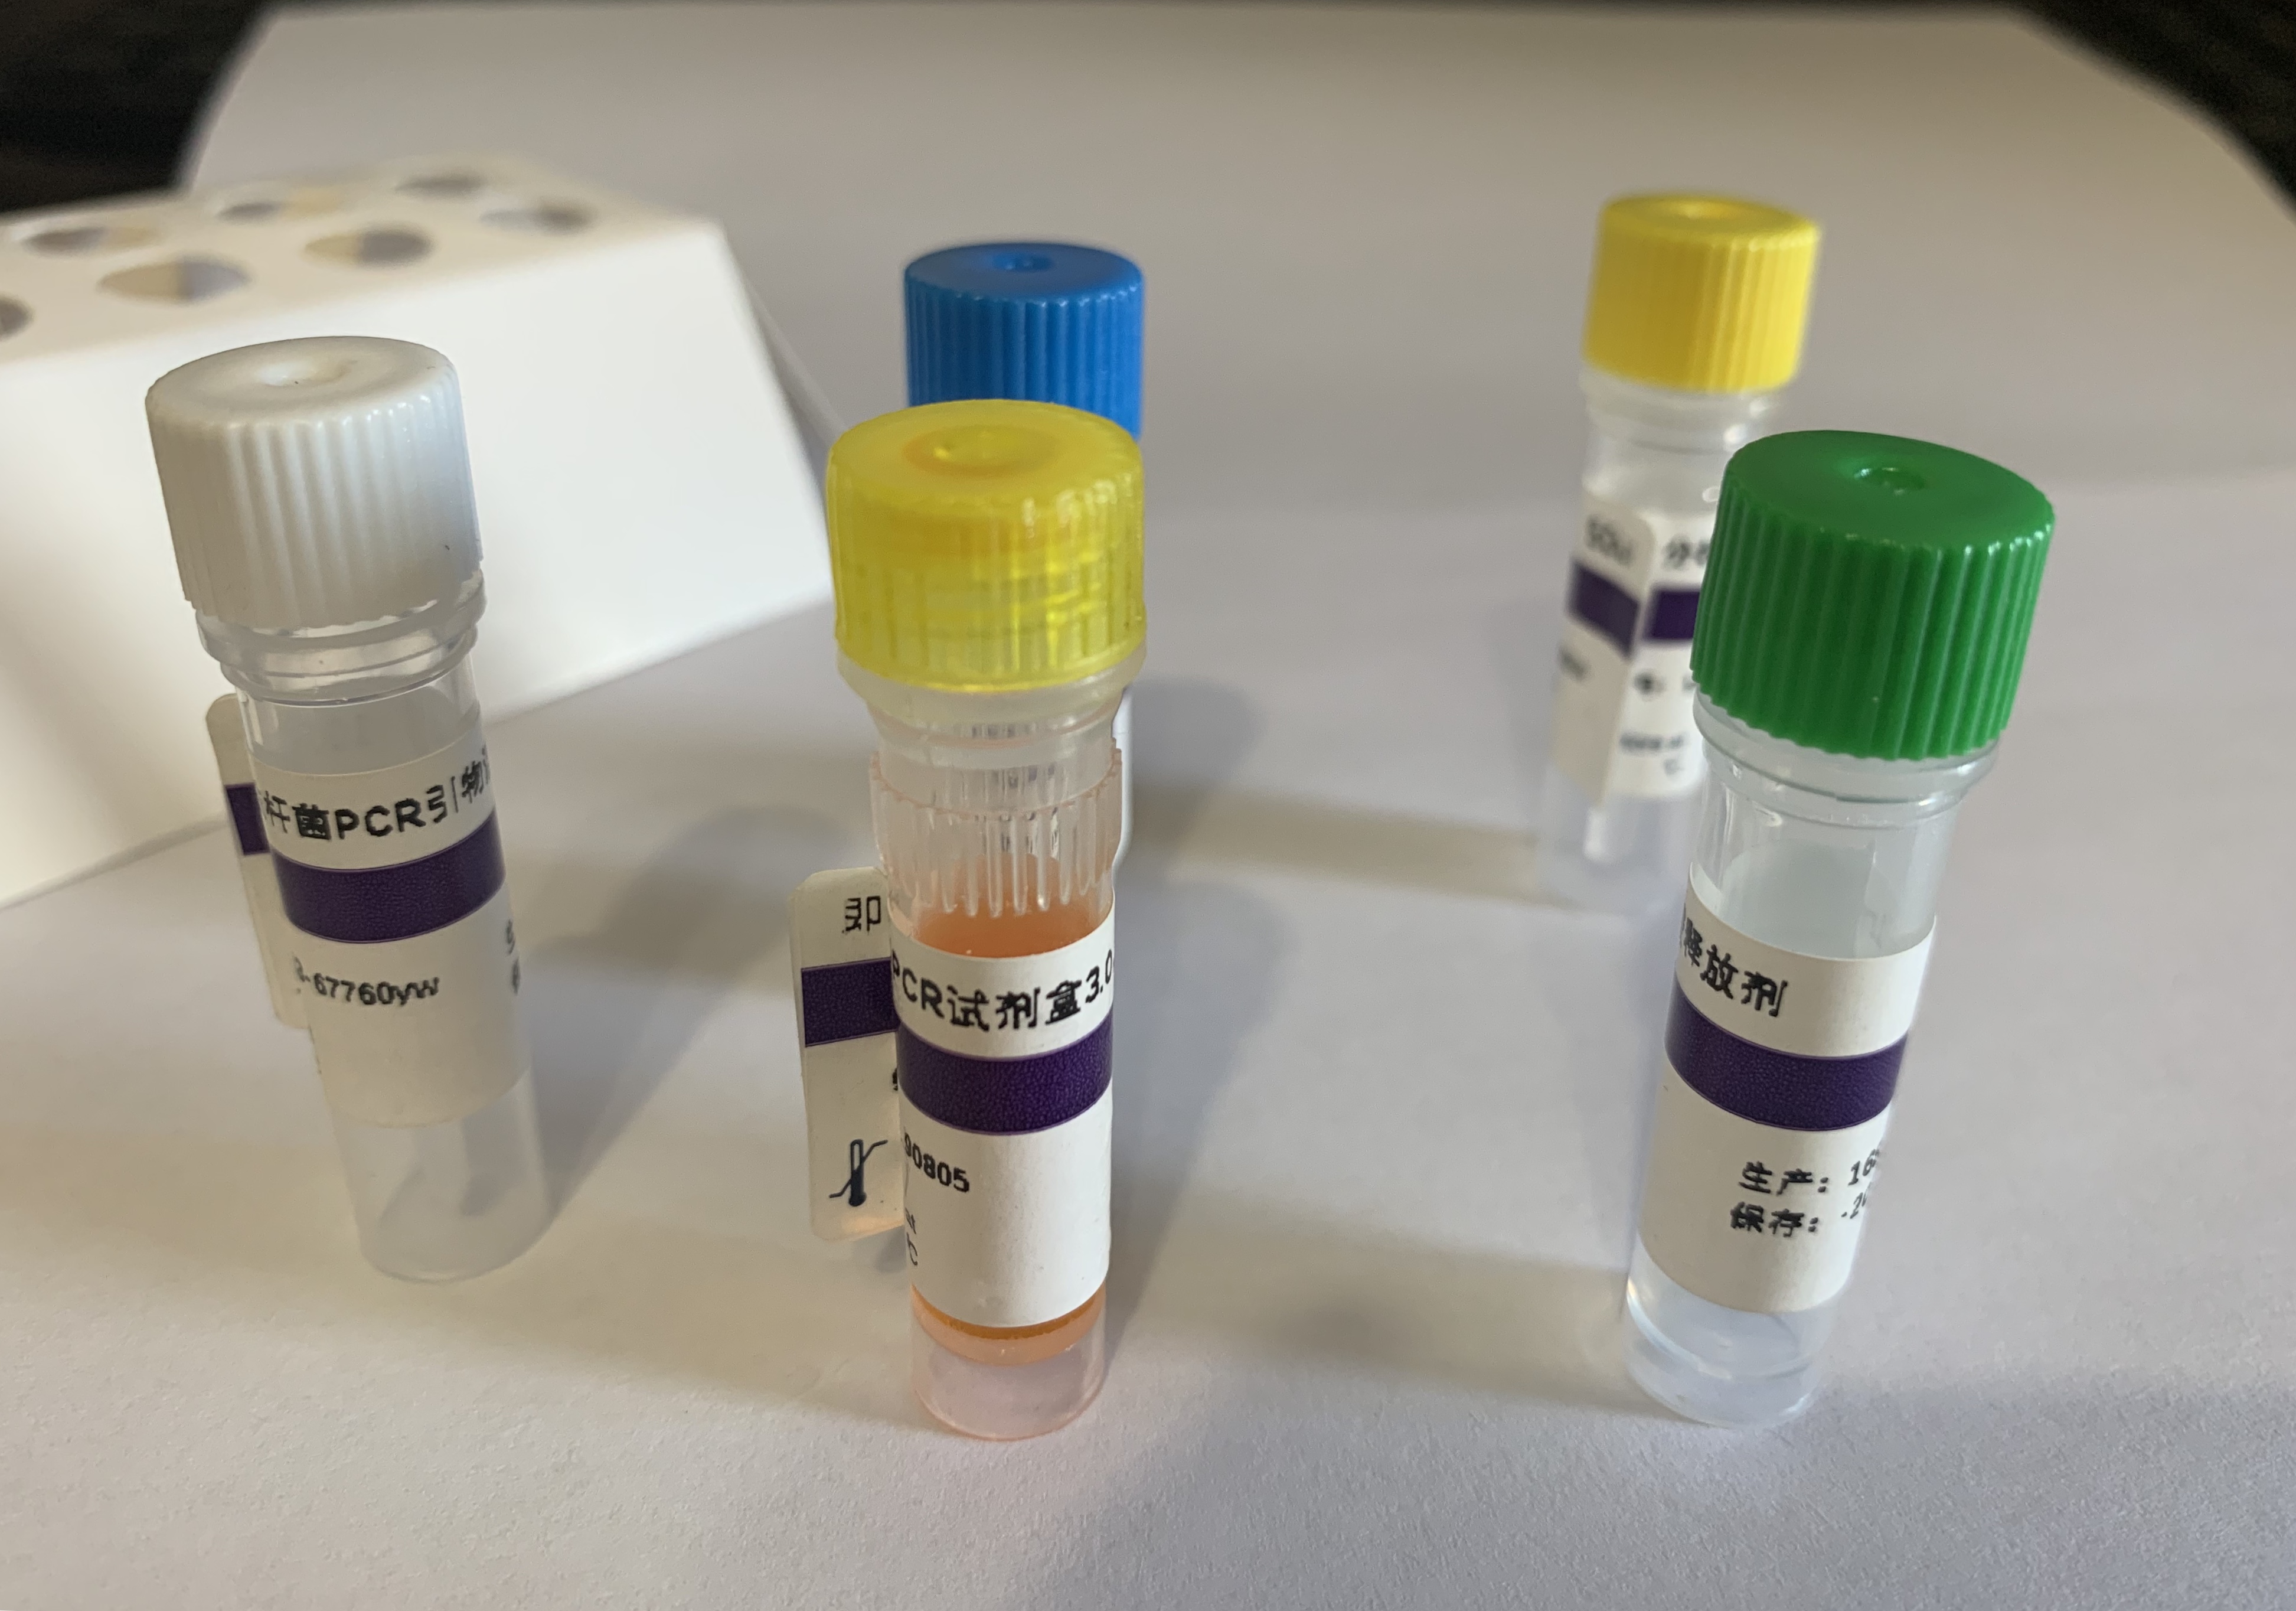 禽肾炎病毒1型探针法荧光定量RT-PCR试剂盒